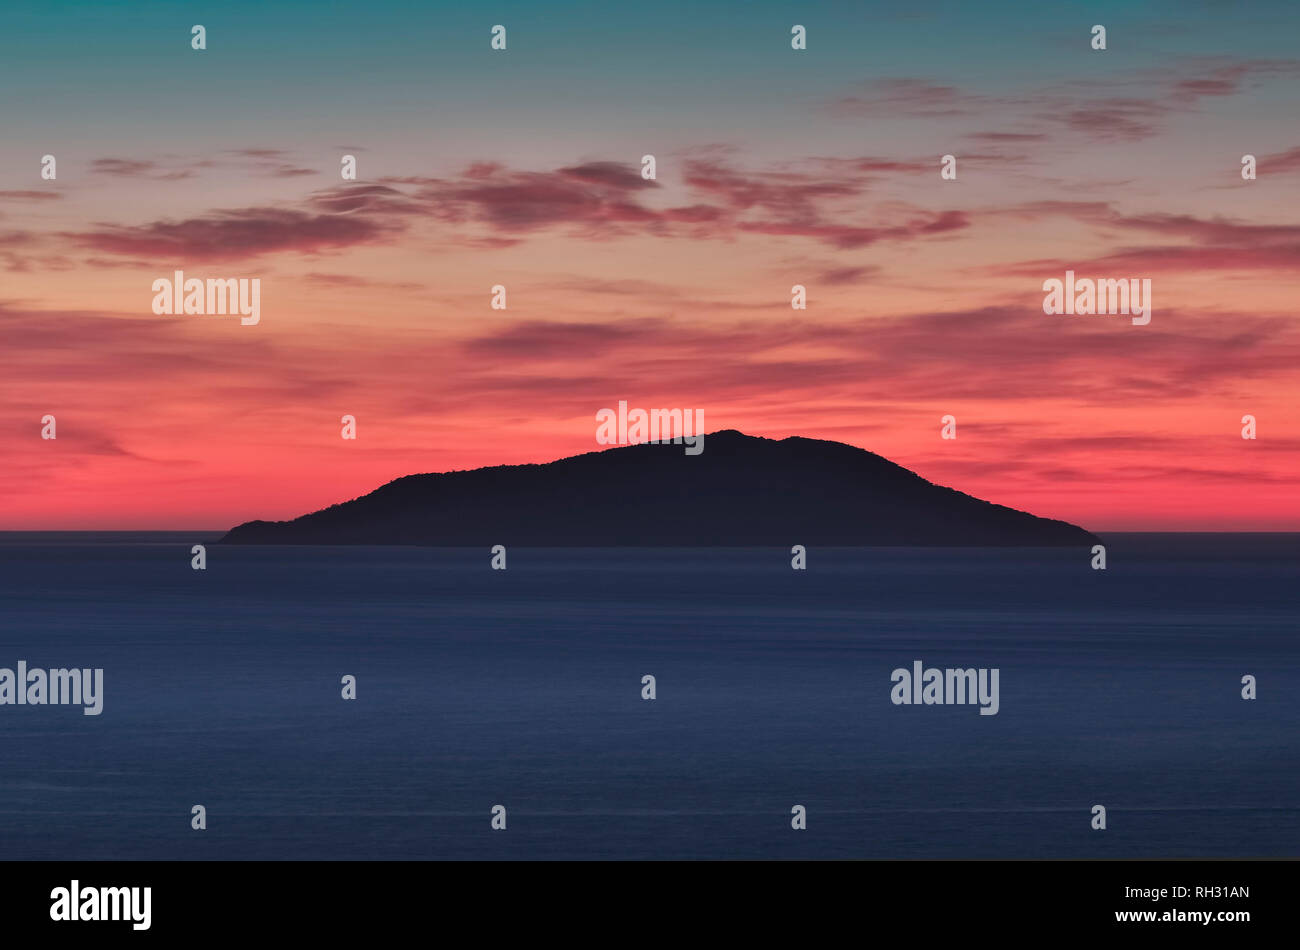 Kleine Insel Silhouette in der Mitte des Meeres bei Sonnenaufgang, bunte Himmel mit roten, Zyan und Blau Tönen. Ilha Do Arvoredo - Bombinhas SC, Brasilien. Stockfoto